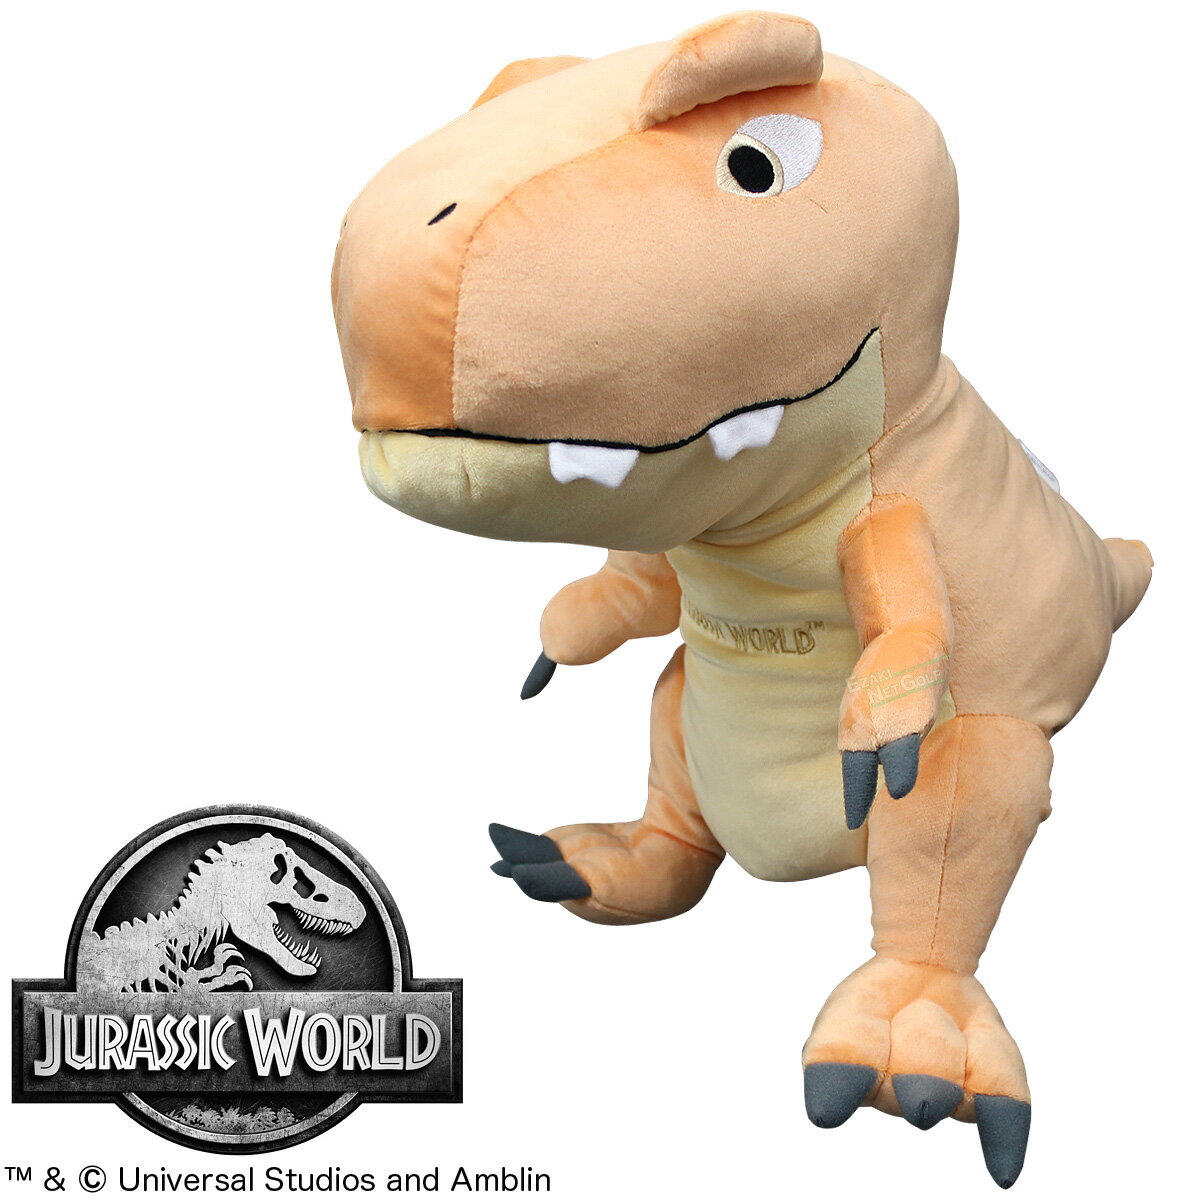 Jurassic World ジュラシック ワールド Tレックス ドライバー用 ヘッドカバー 丸眞 「 4985005100 」 